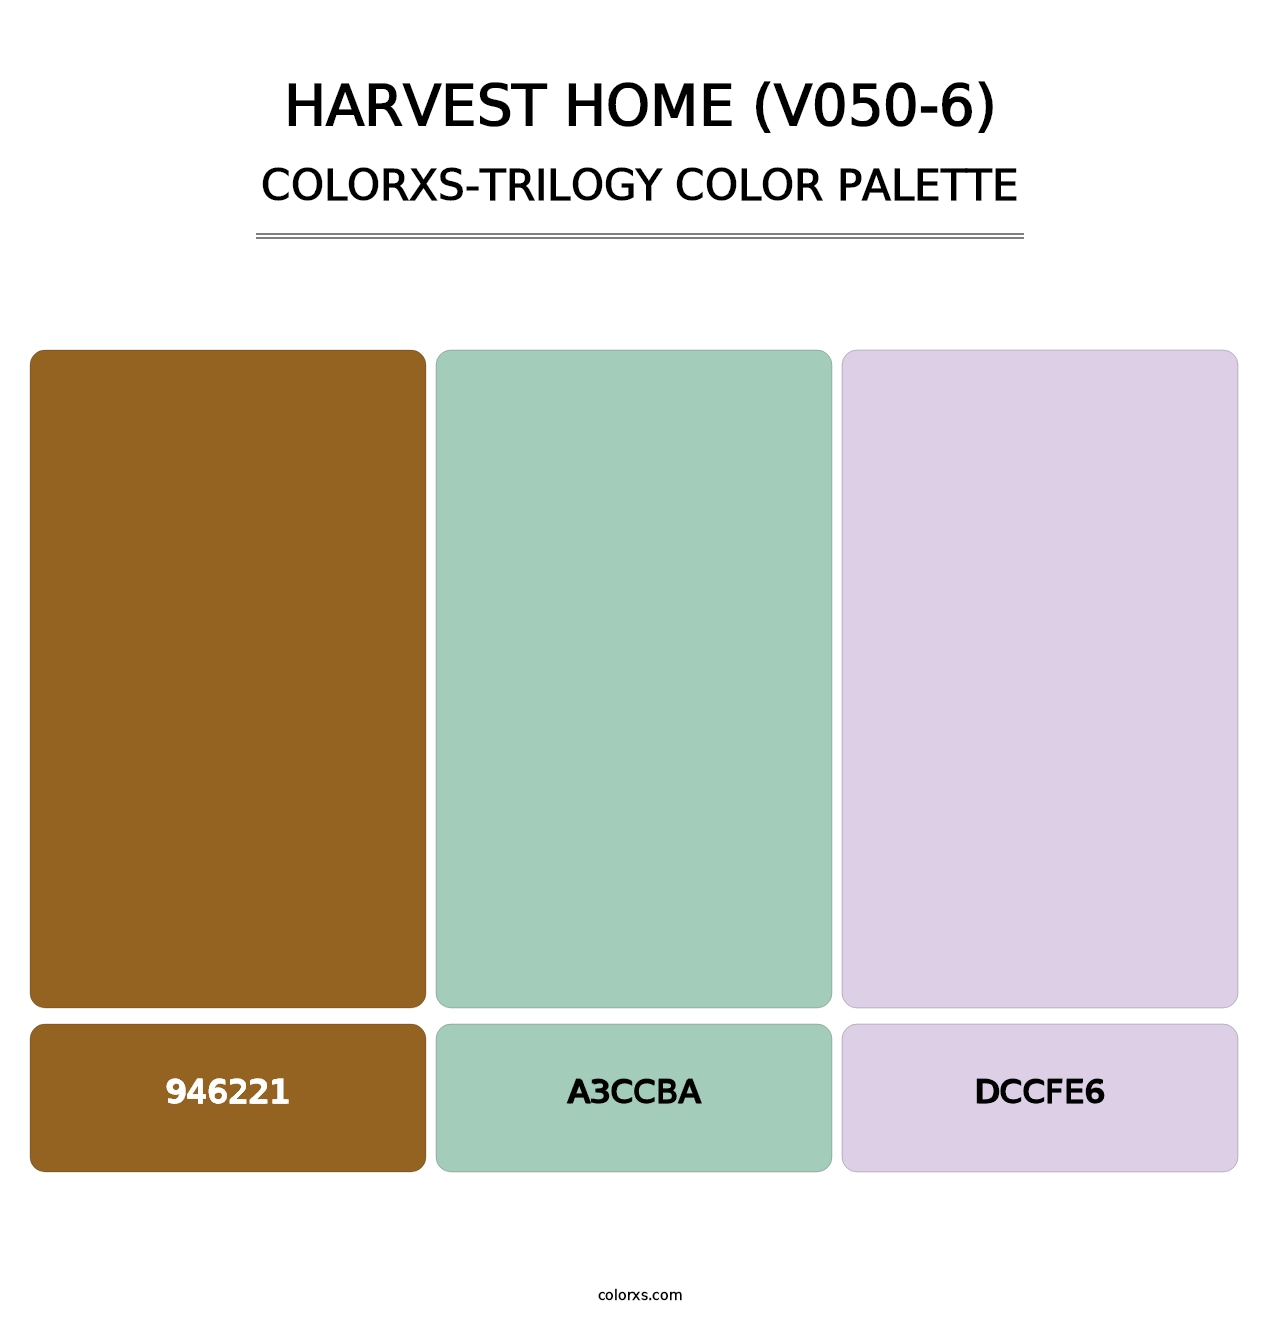 Harvest Home (V050-6) - Colorxs Trilogy Palette